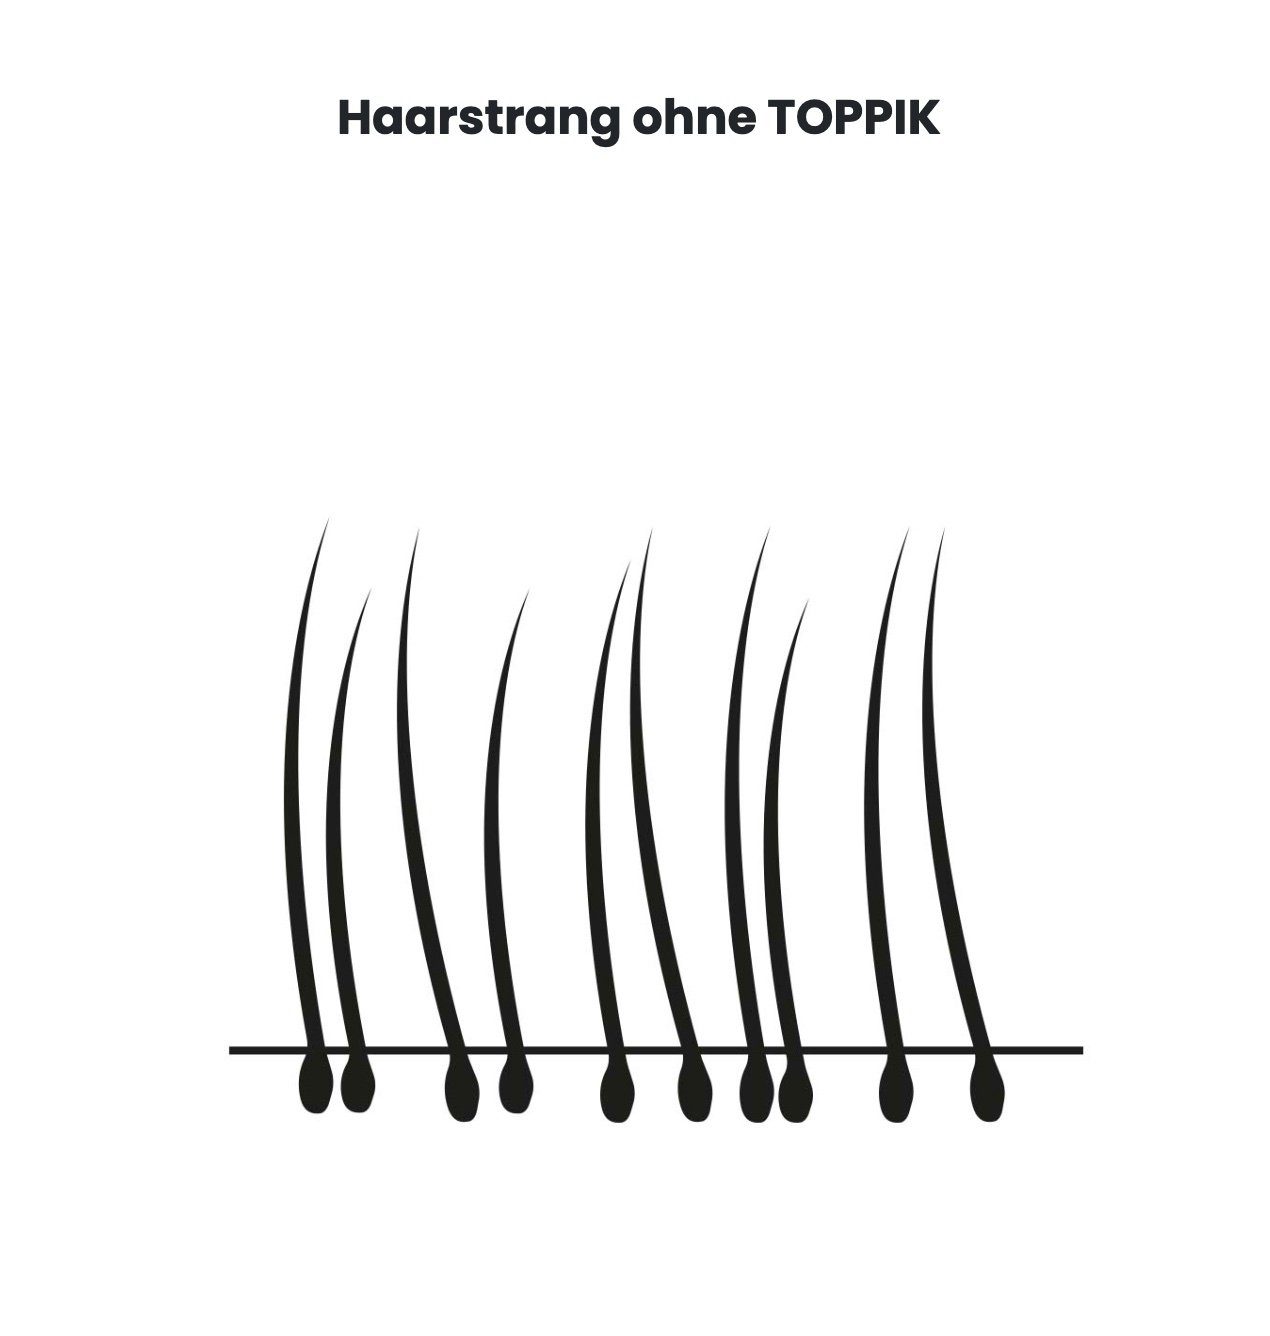 TOPPIK Haarstyling-Set TOPPIK 55 g. - Streuhaar, Haarverdichtung, Schütthaar, Haarfasern, Puder, Hair Fibers Weiß